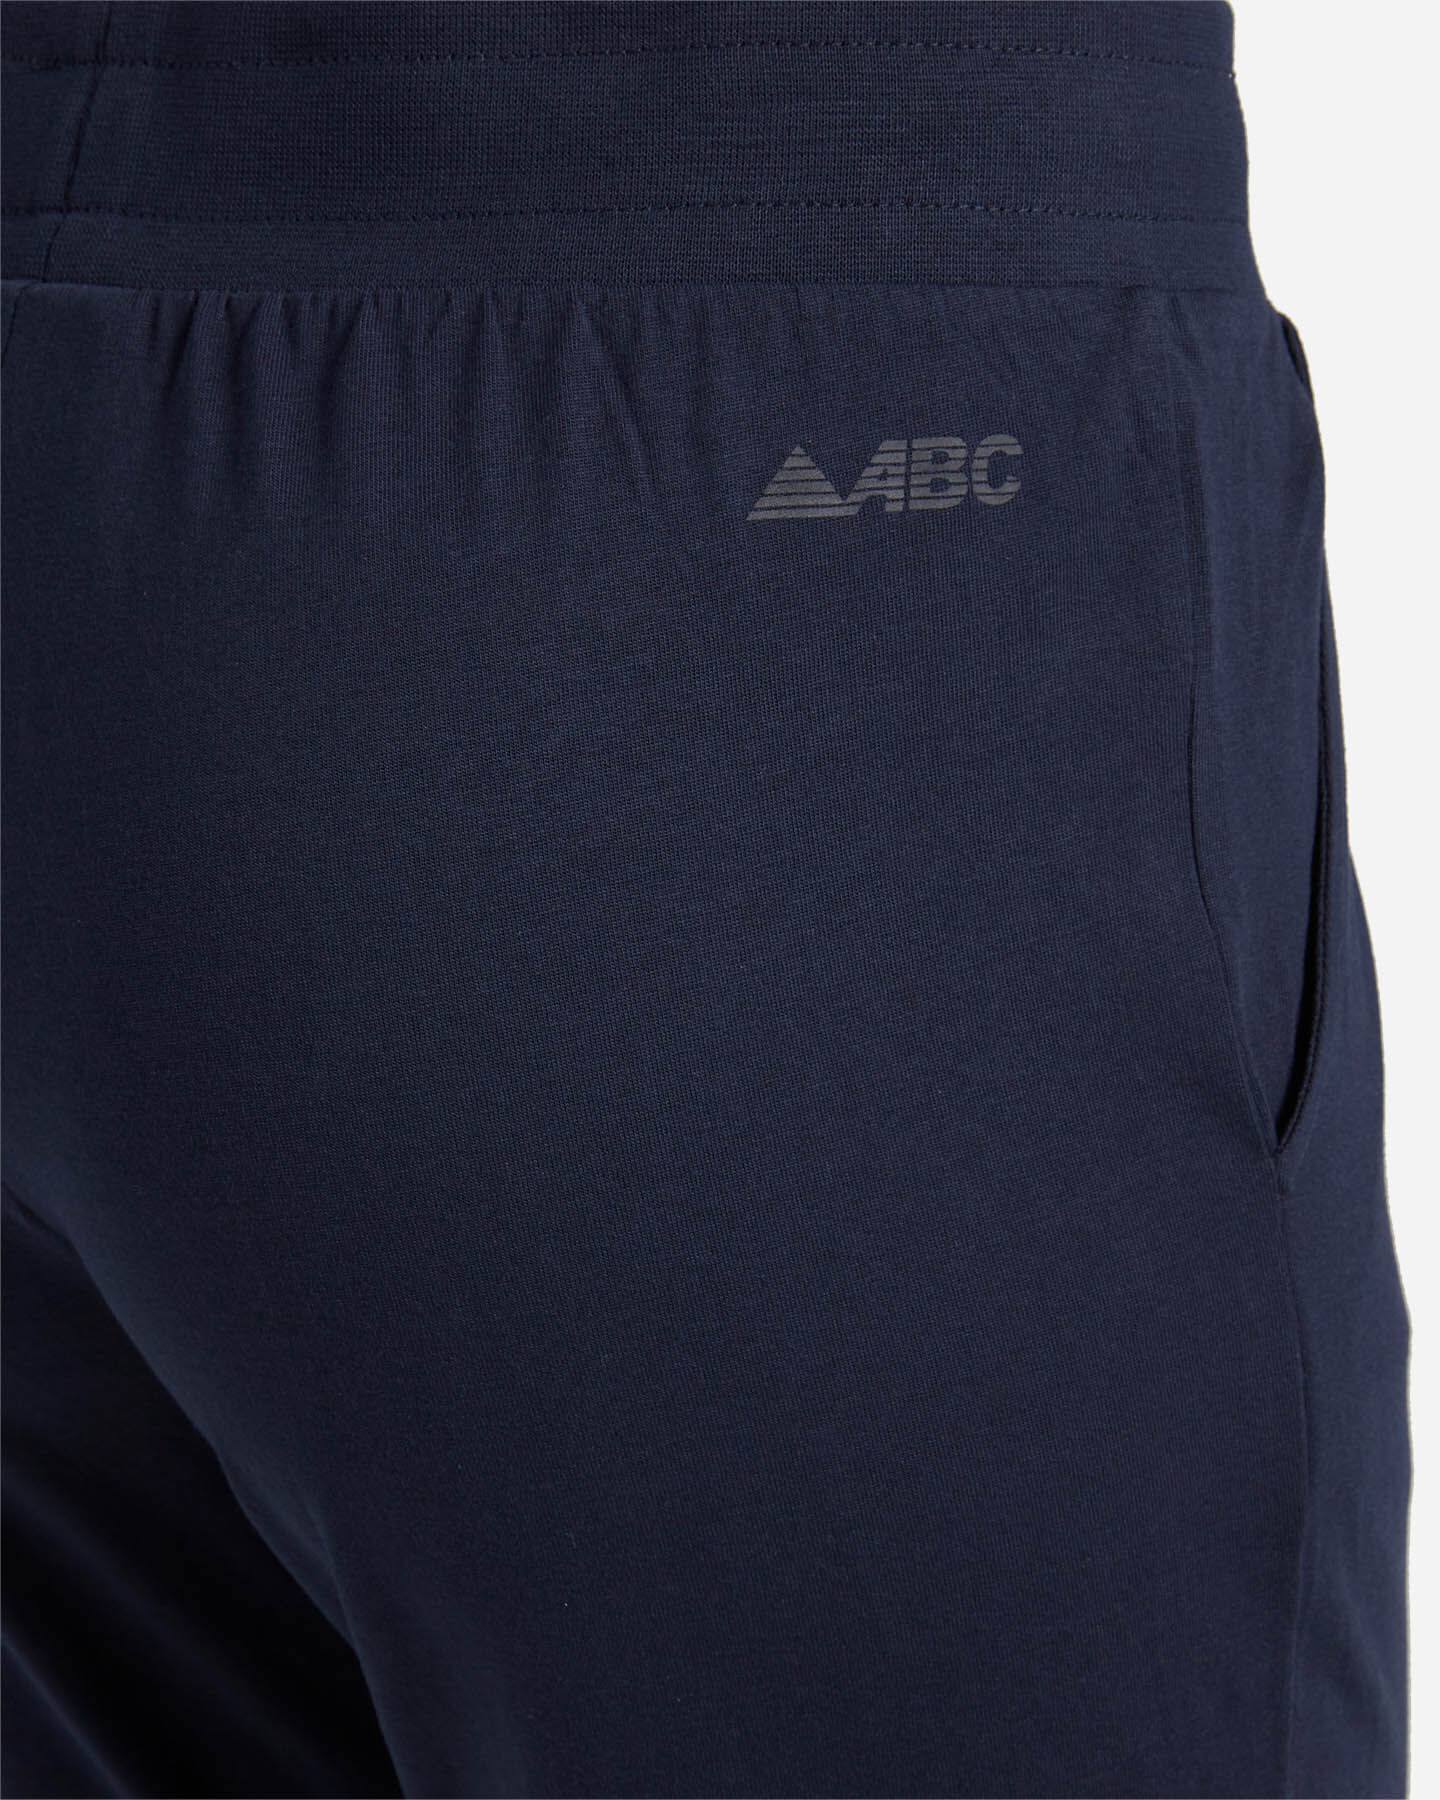  Pantalone ABC JERSEY W S5296355|914|XS scatto 3